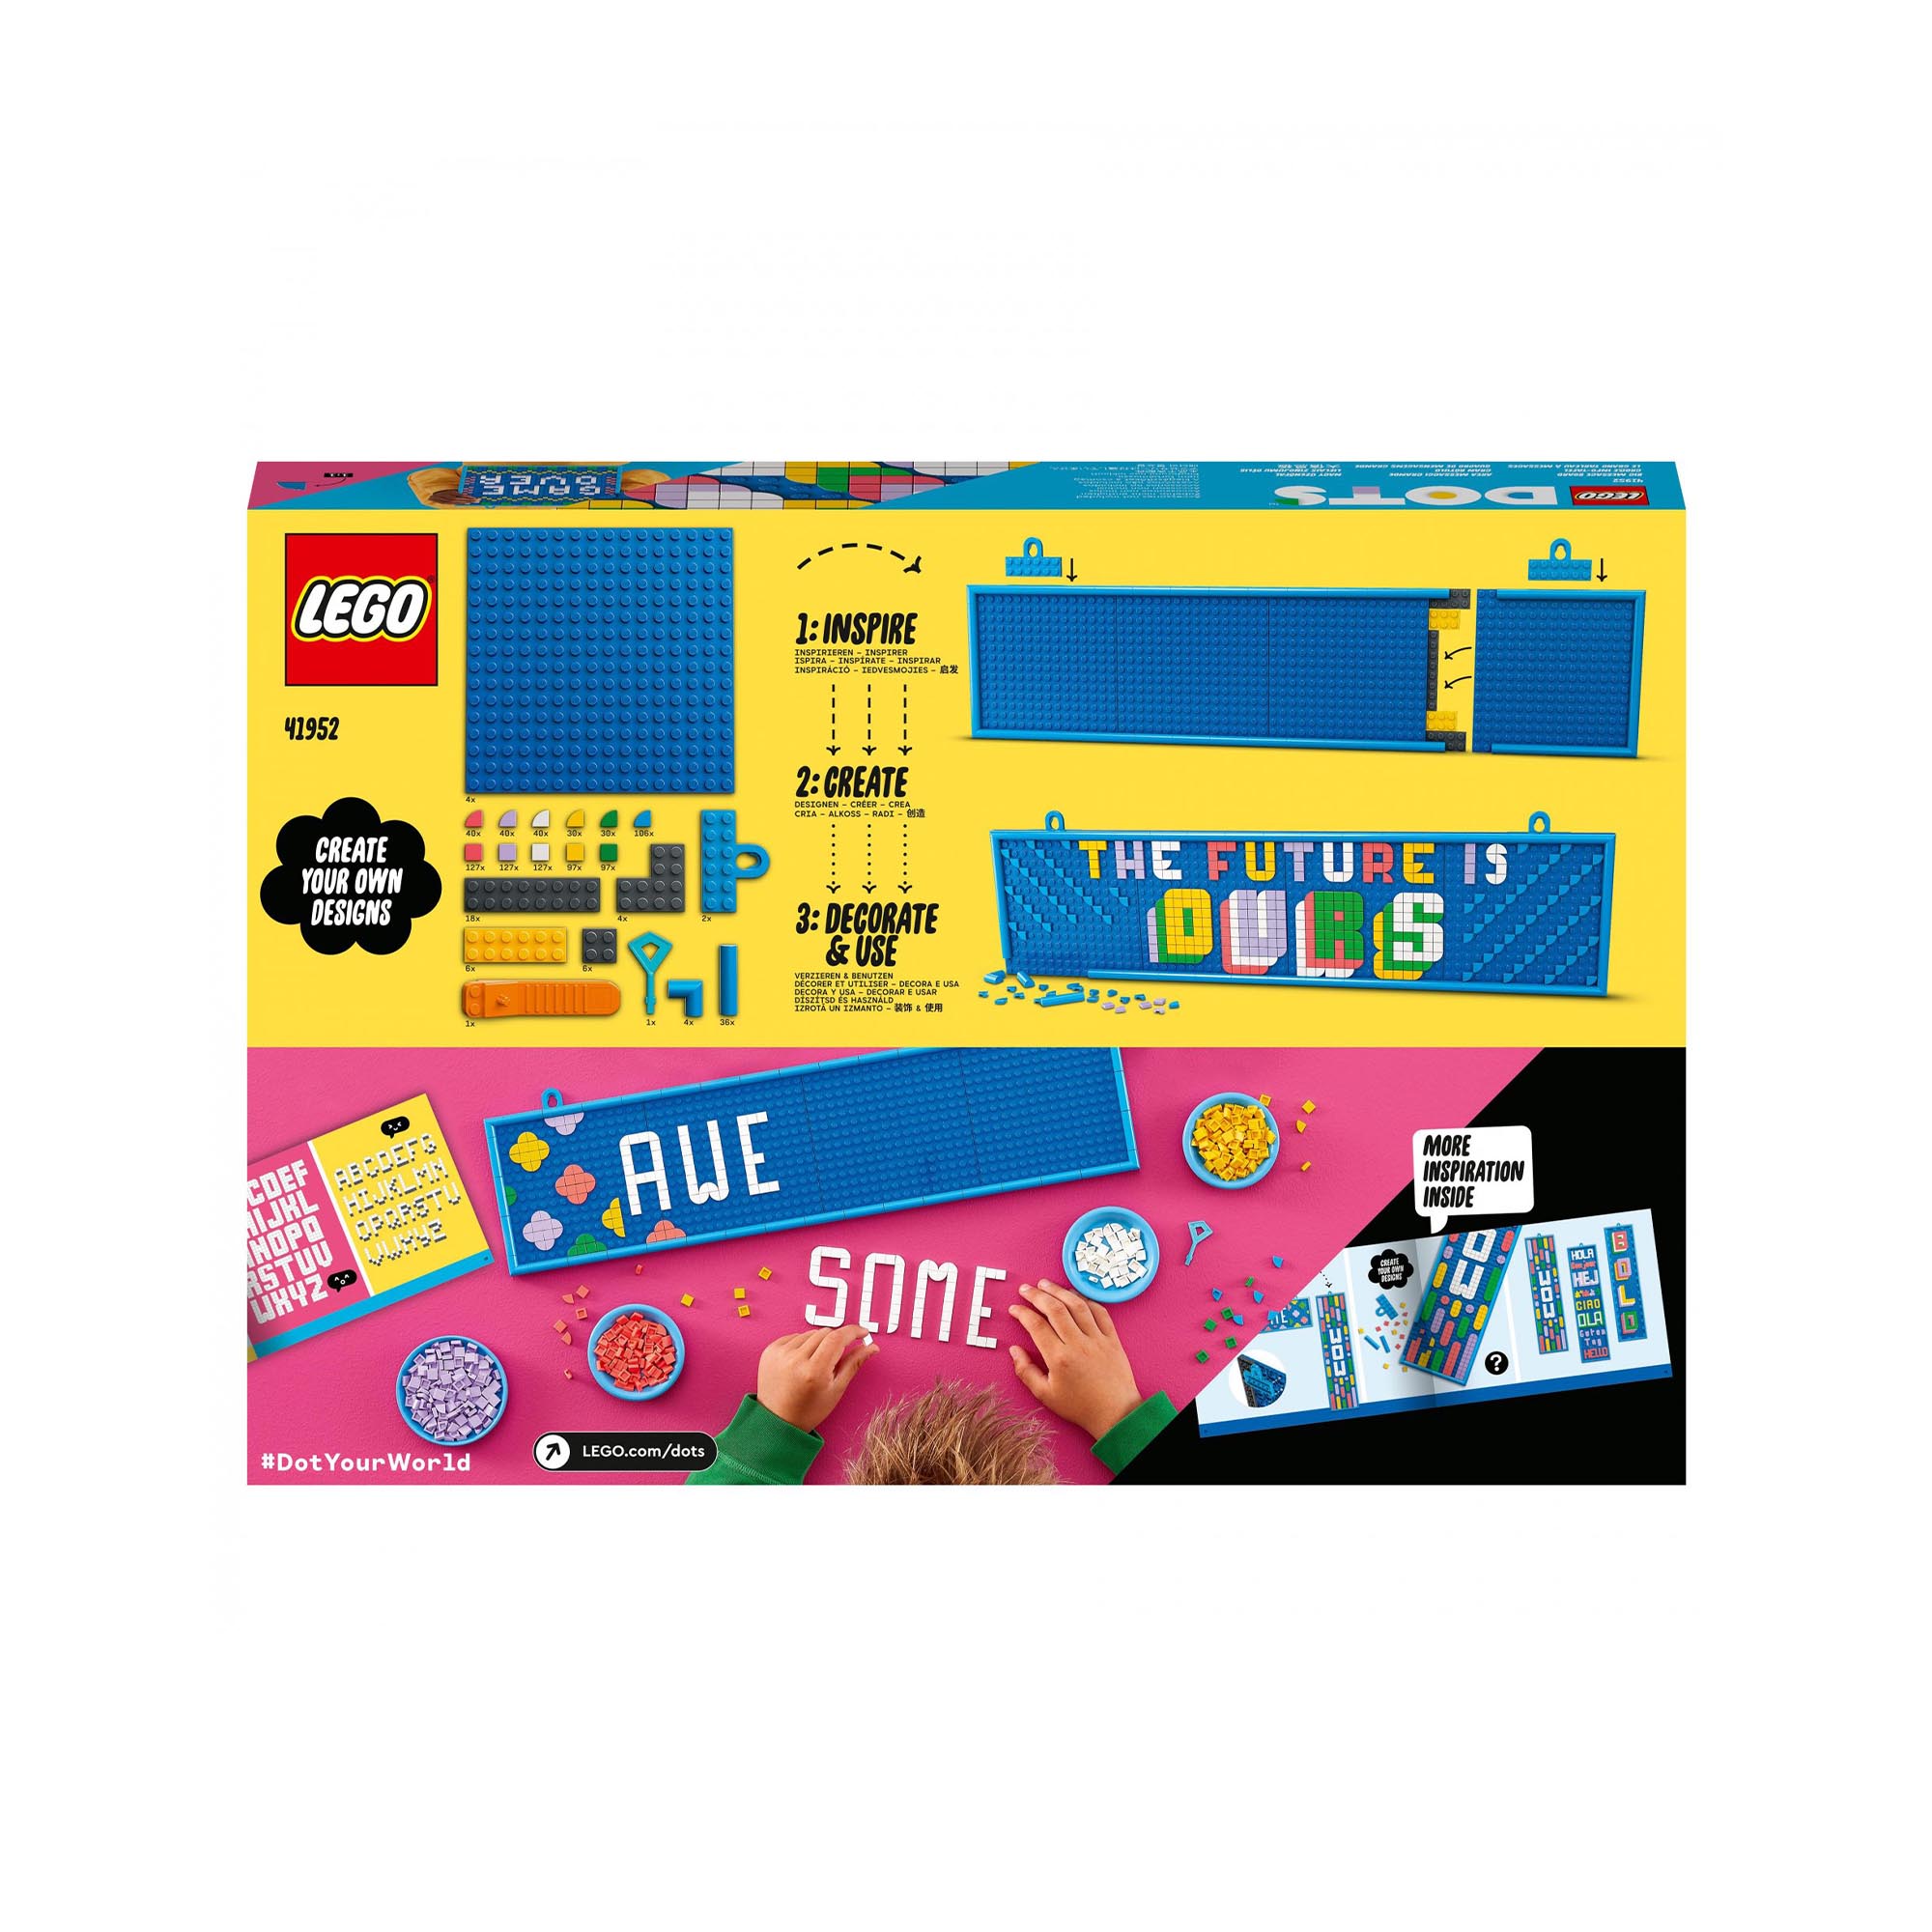 LEGO DOTS Bacheca Messaggi Grande, Decorazioni e Accessori per la Camera dei Bam 41952, , large